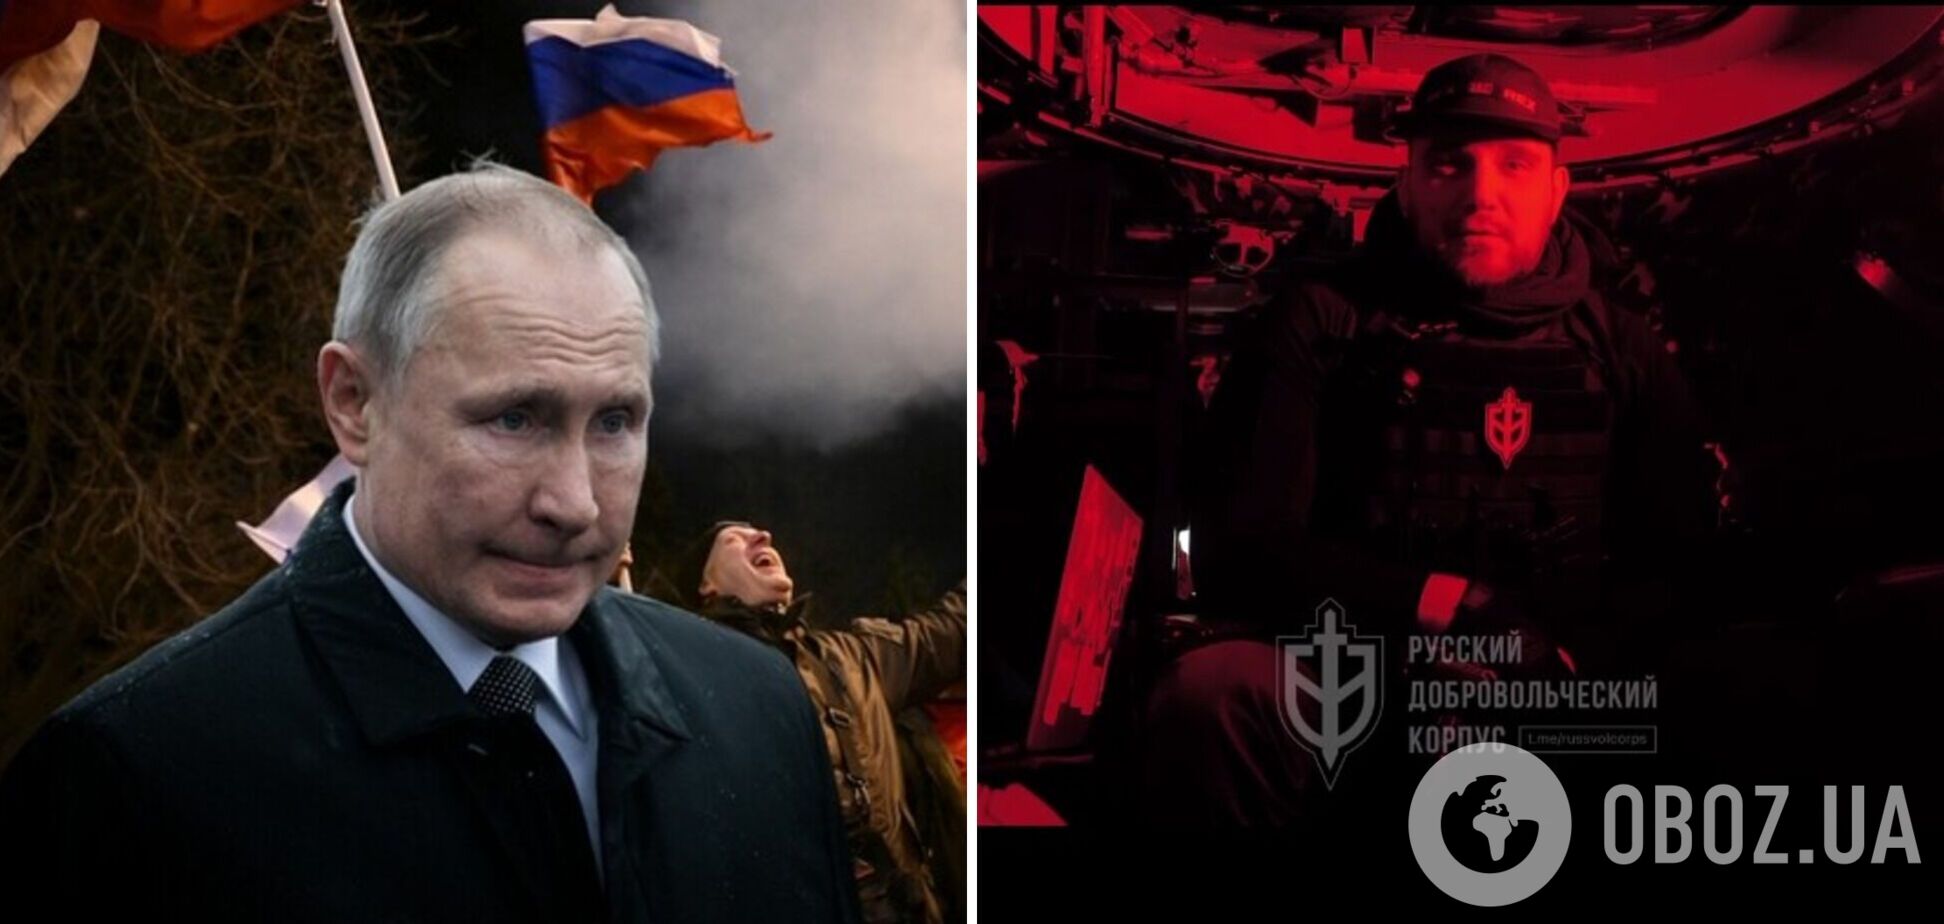 Путин будет править Россией до смерти, а наша задача – приблизить этот момент – РДК